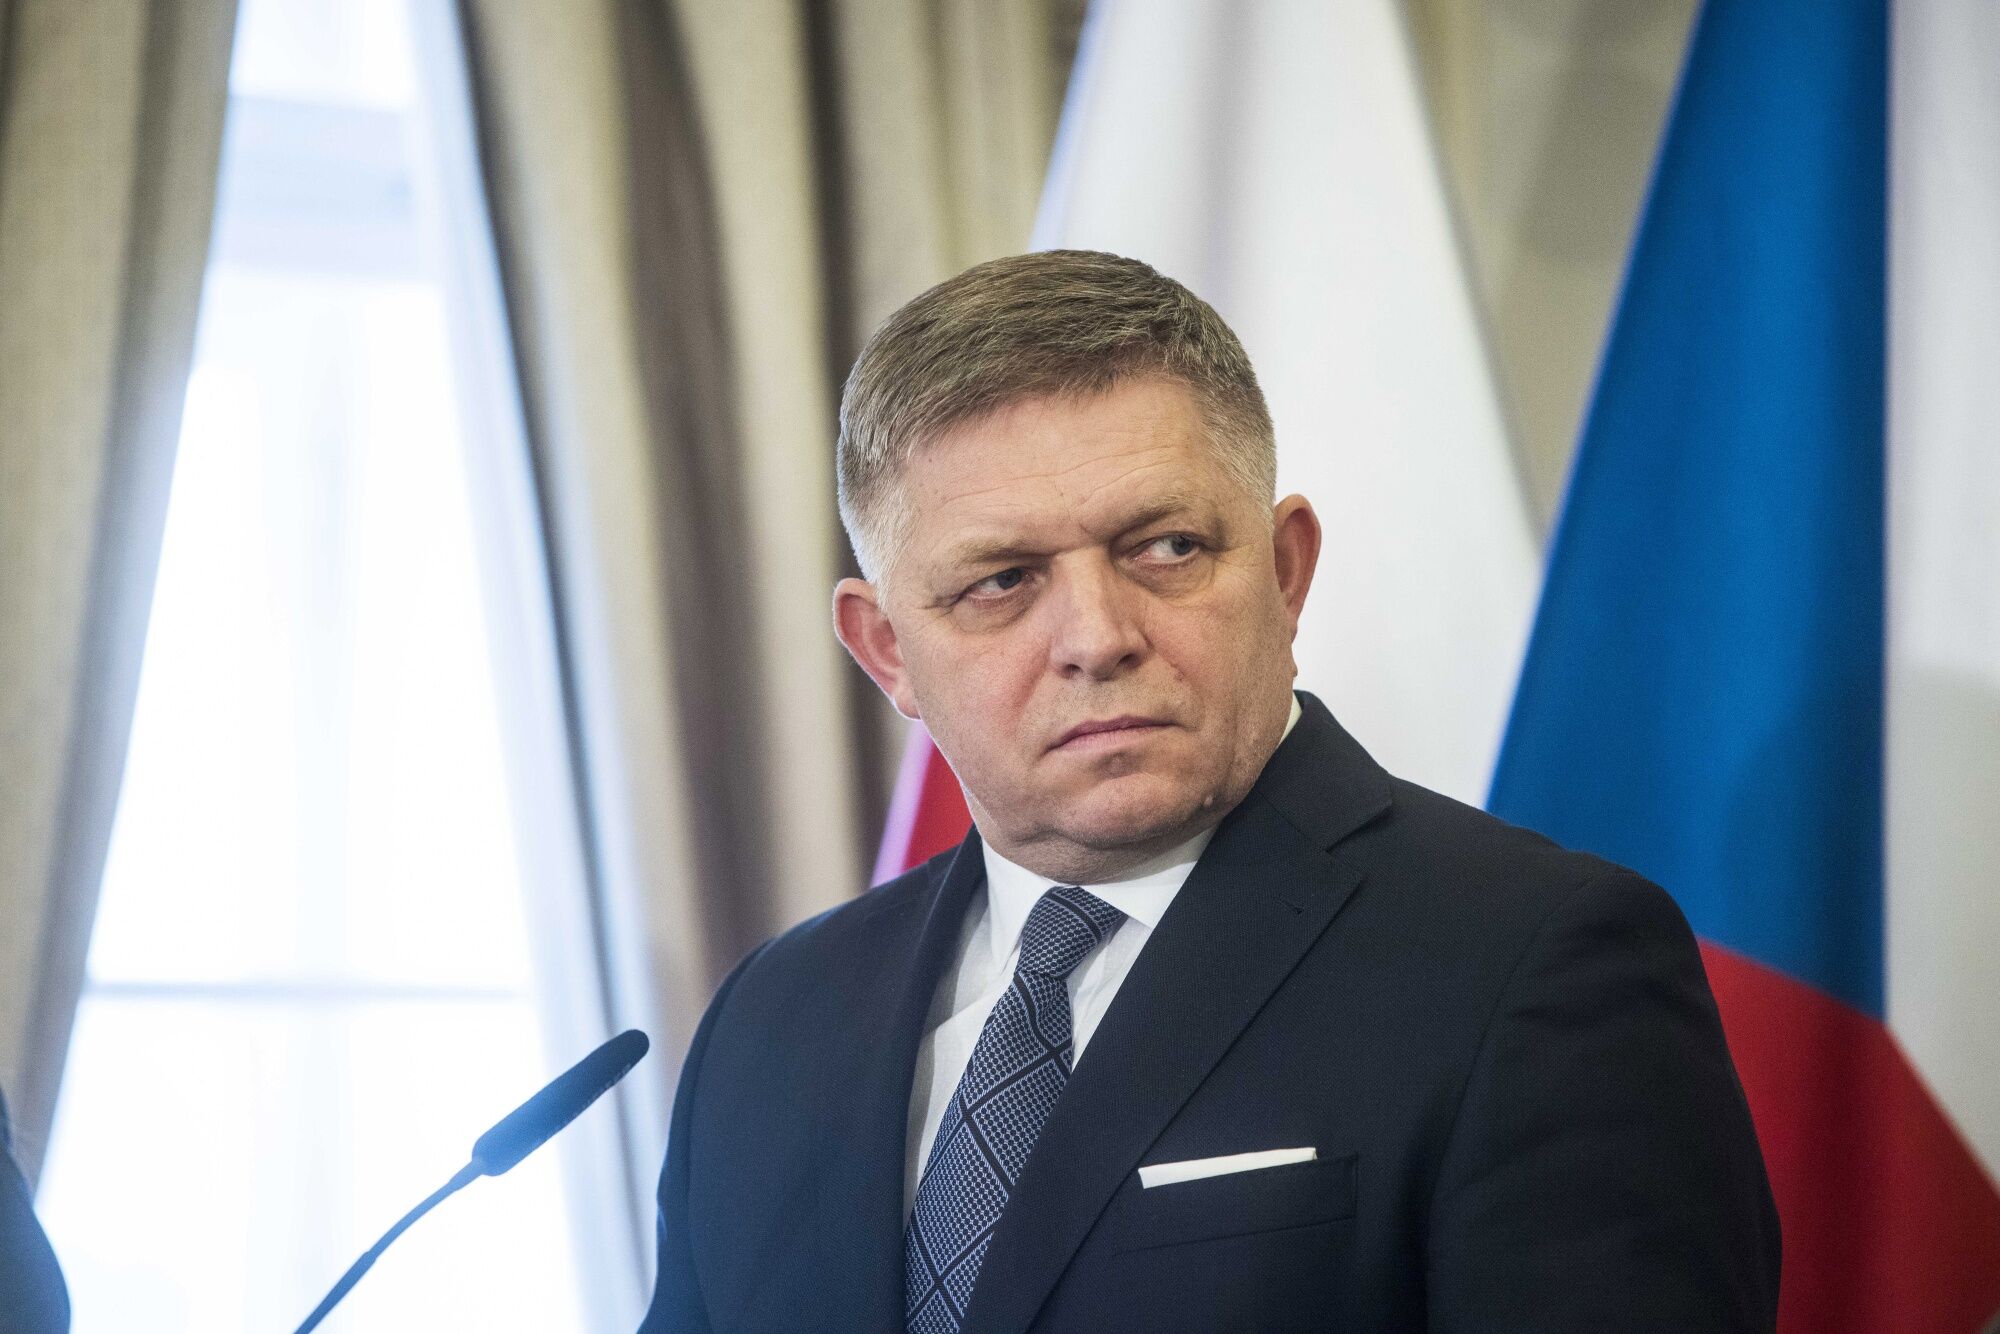 スロバキア首相が銃撃され重体、暗殺未遂か－容疑者拘束